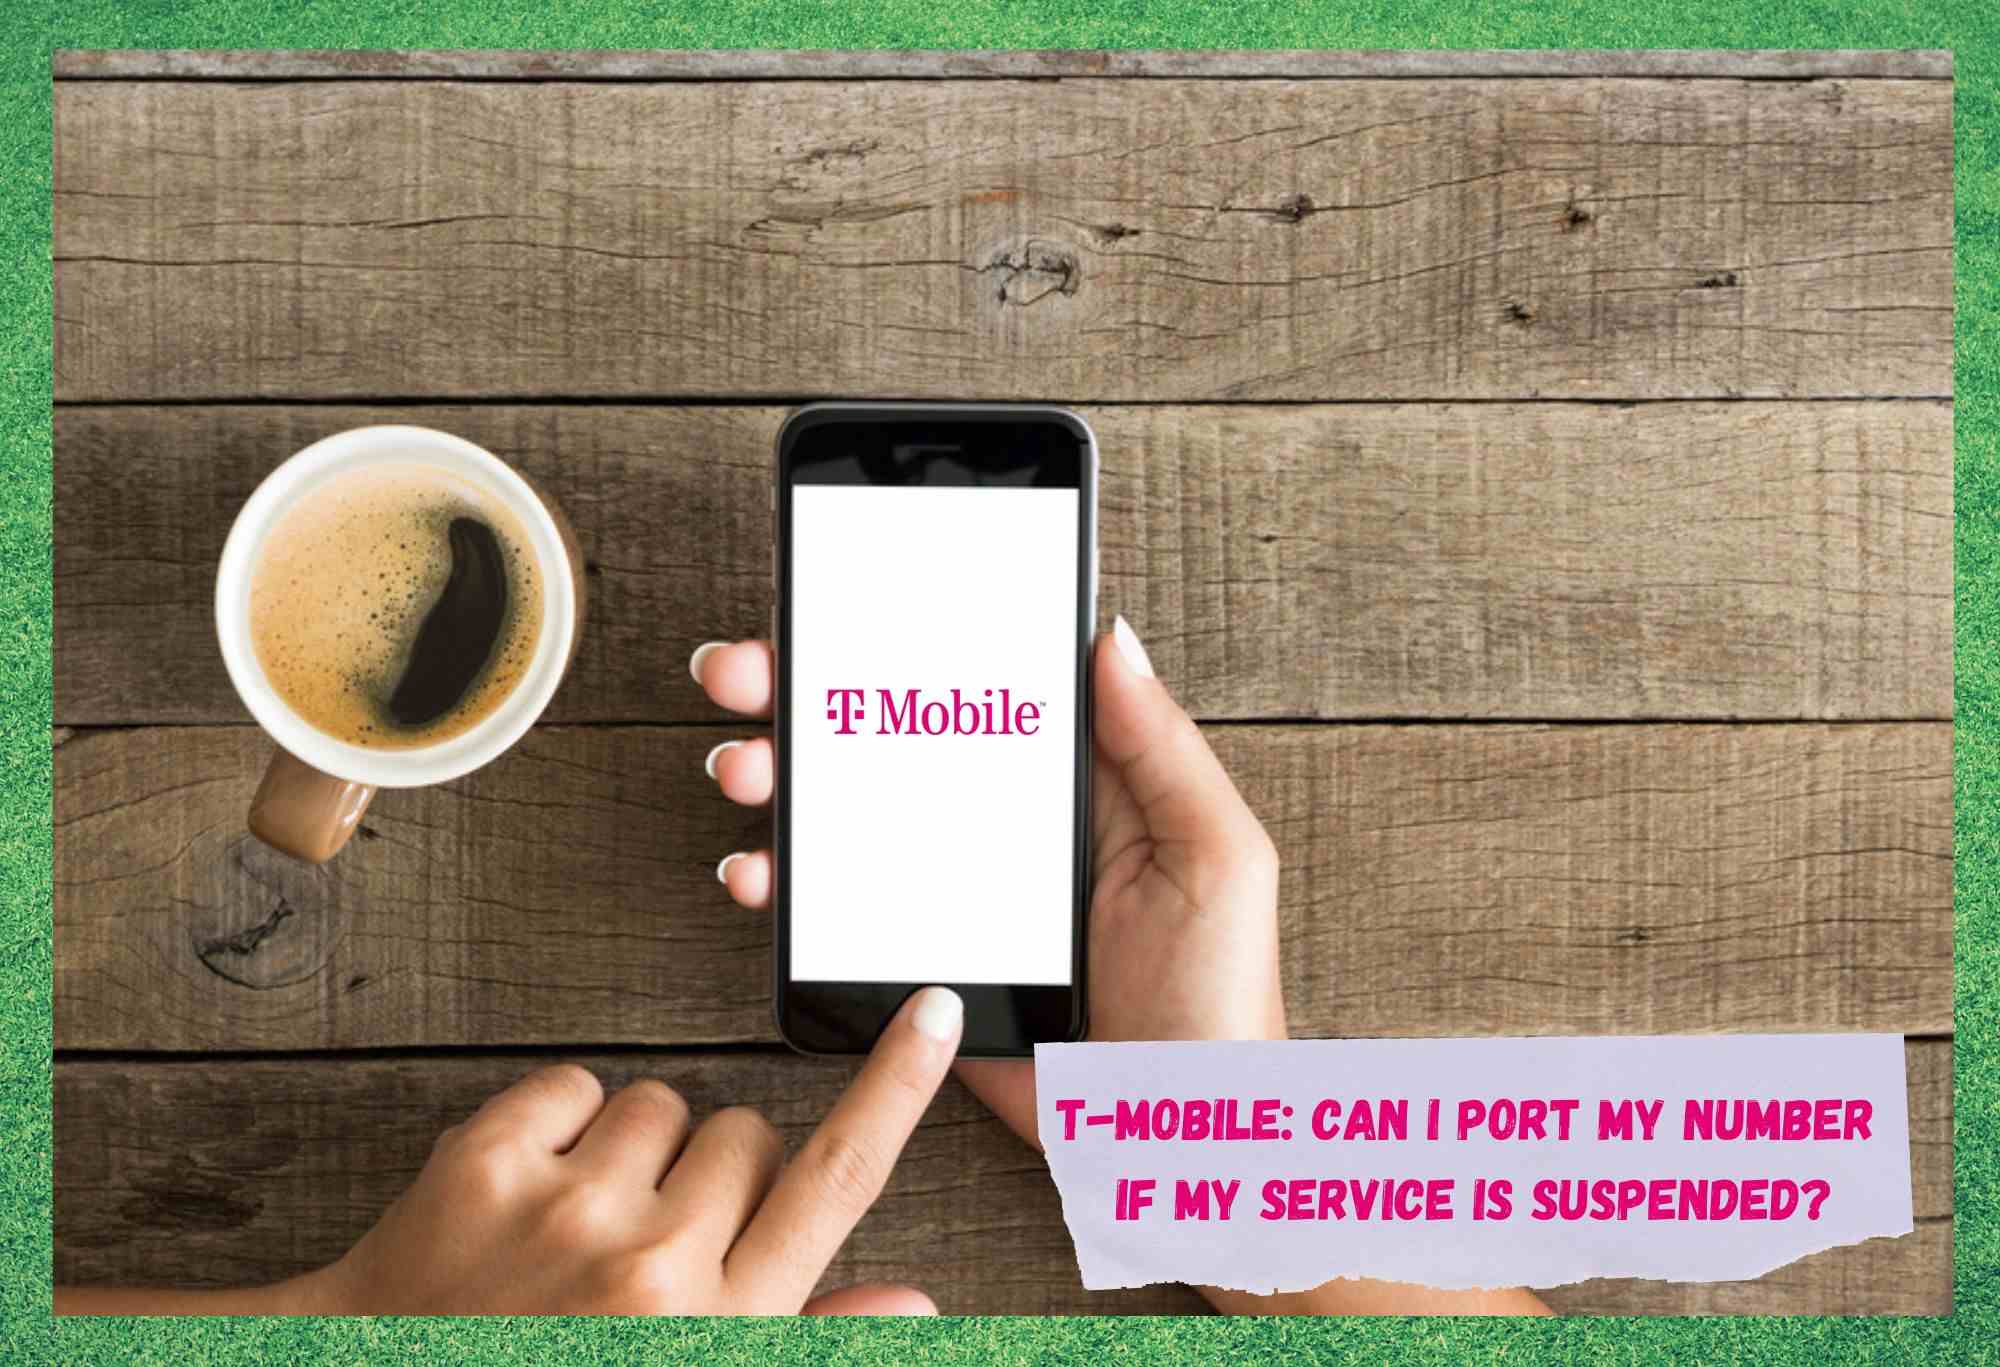 T-Mobile: Kan ik mijn nummer overdragen als mijn service wordt opgeschort?